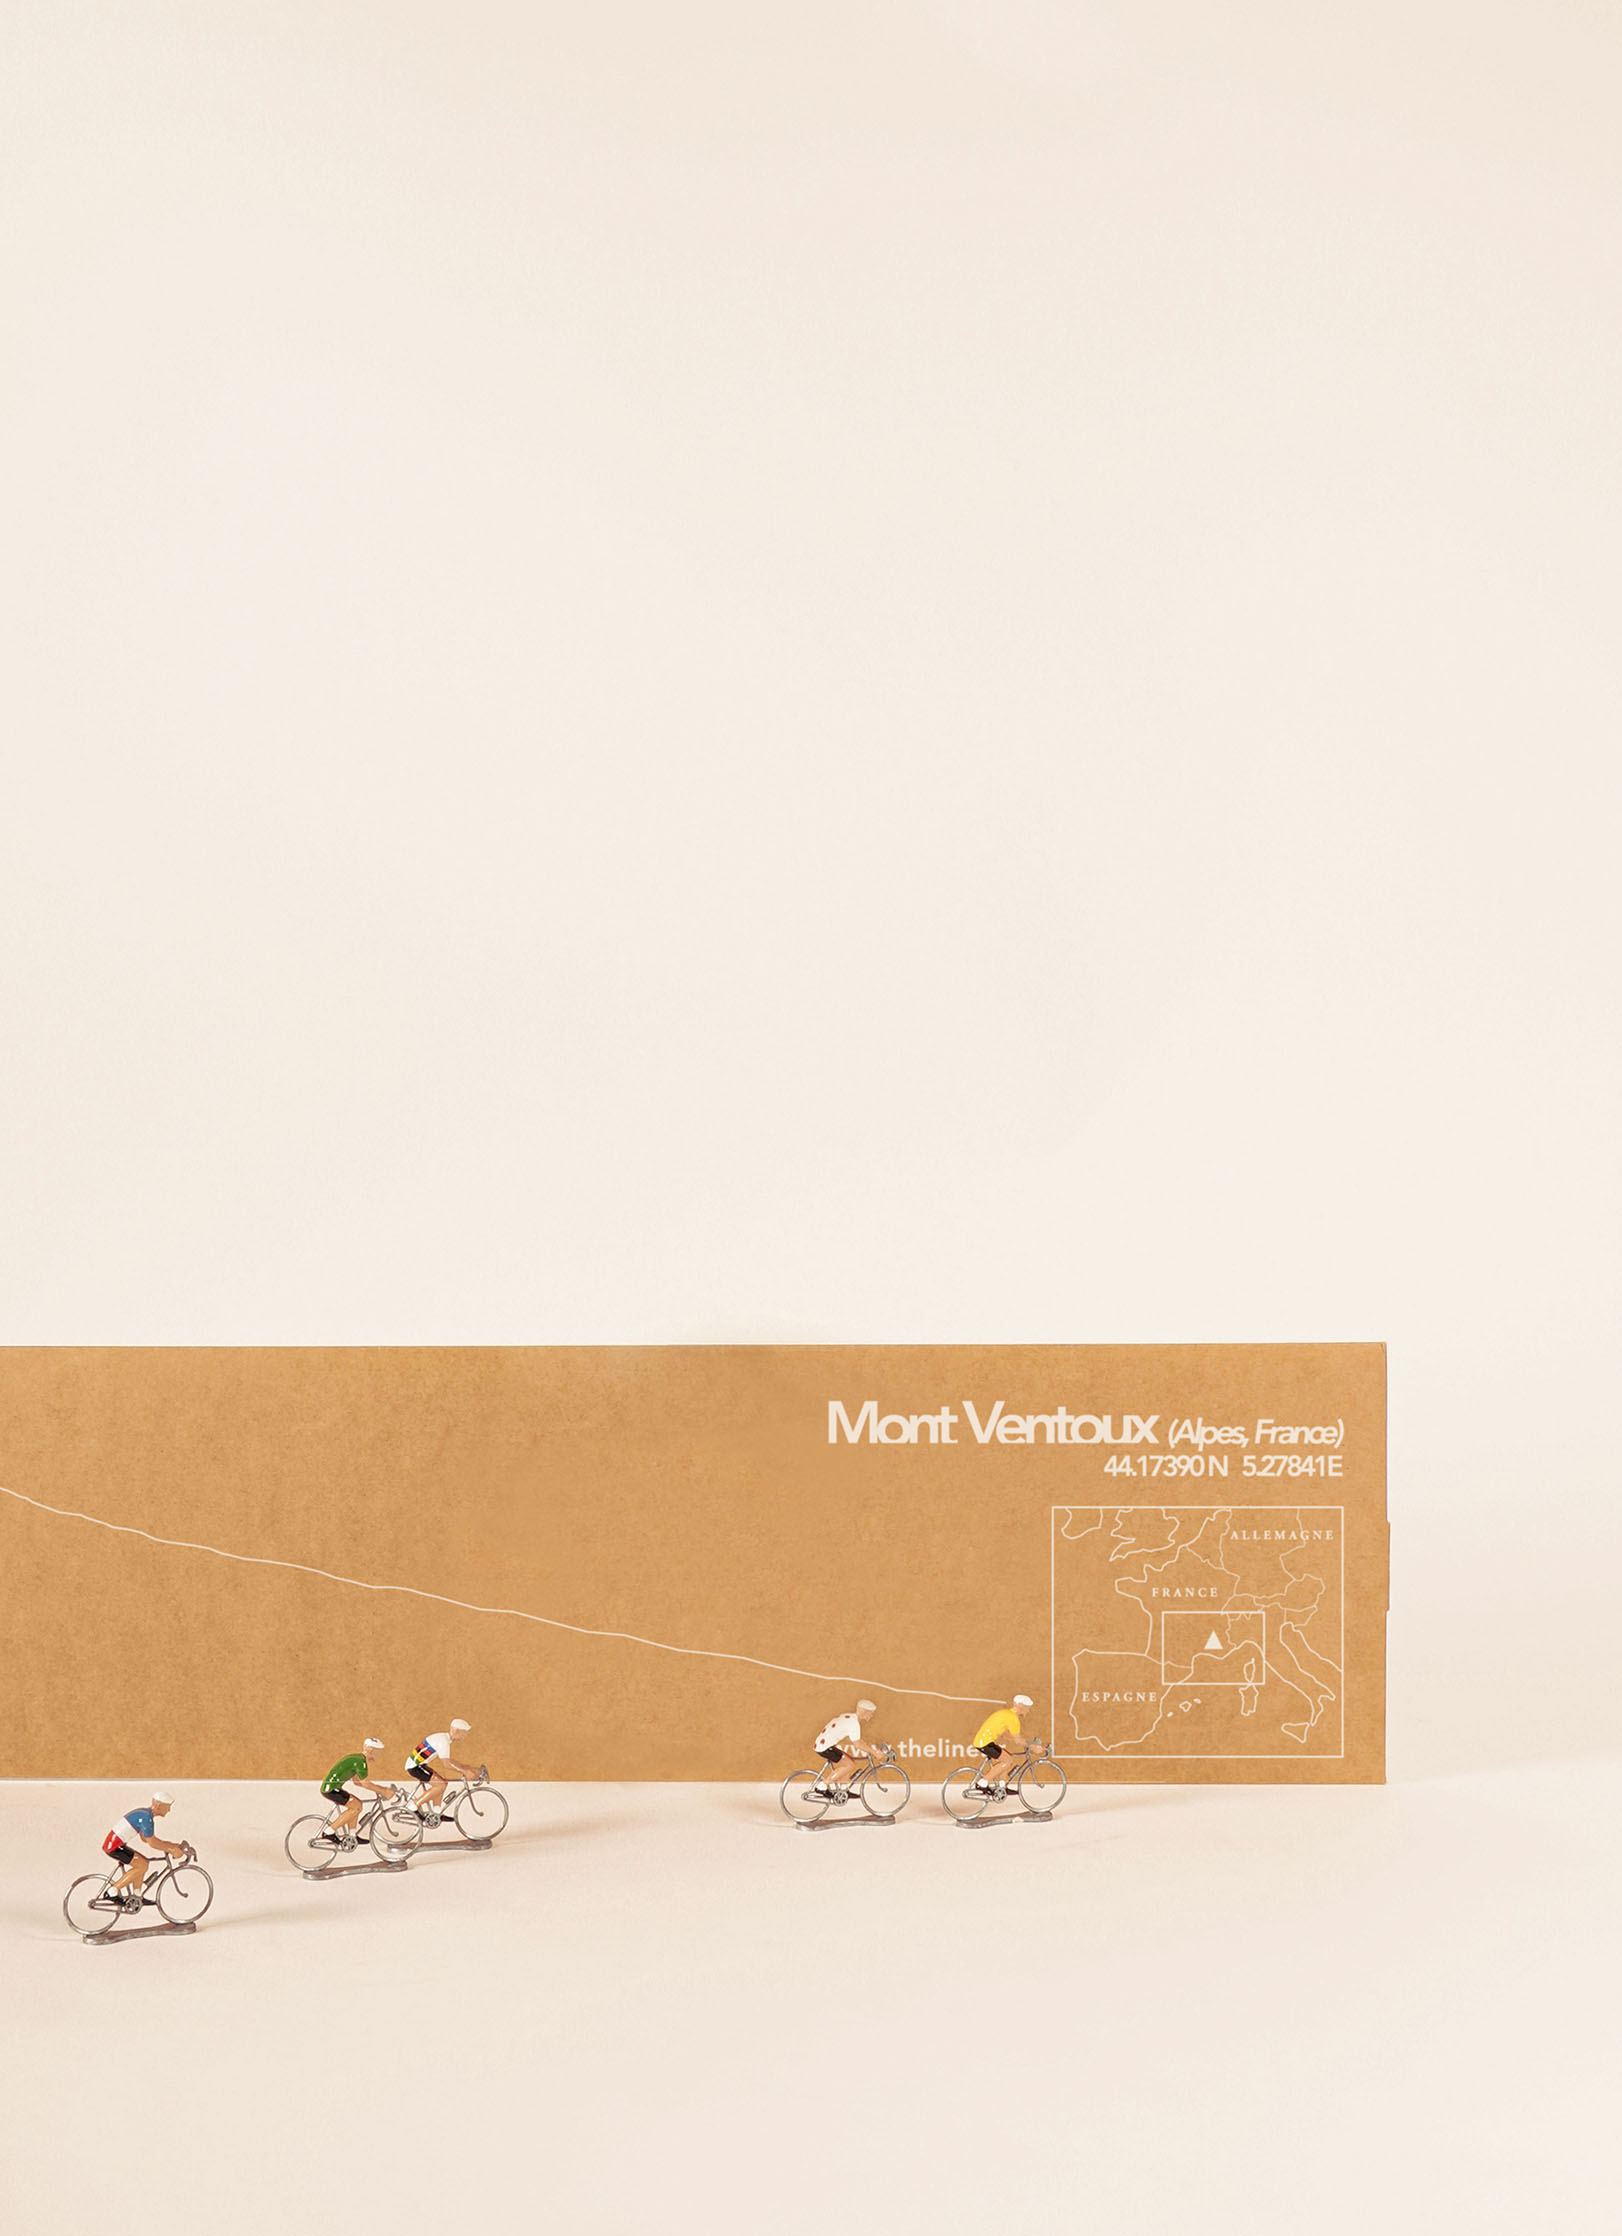 Packaging de la déco murale de Mont Ventoux XL